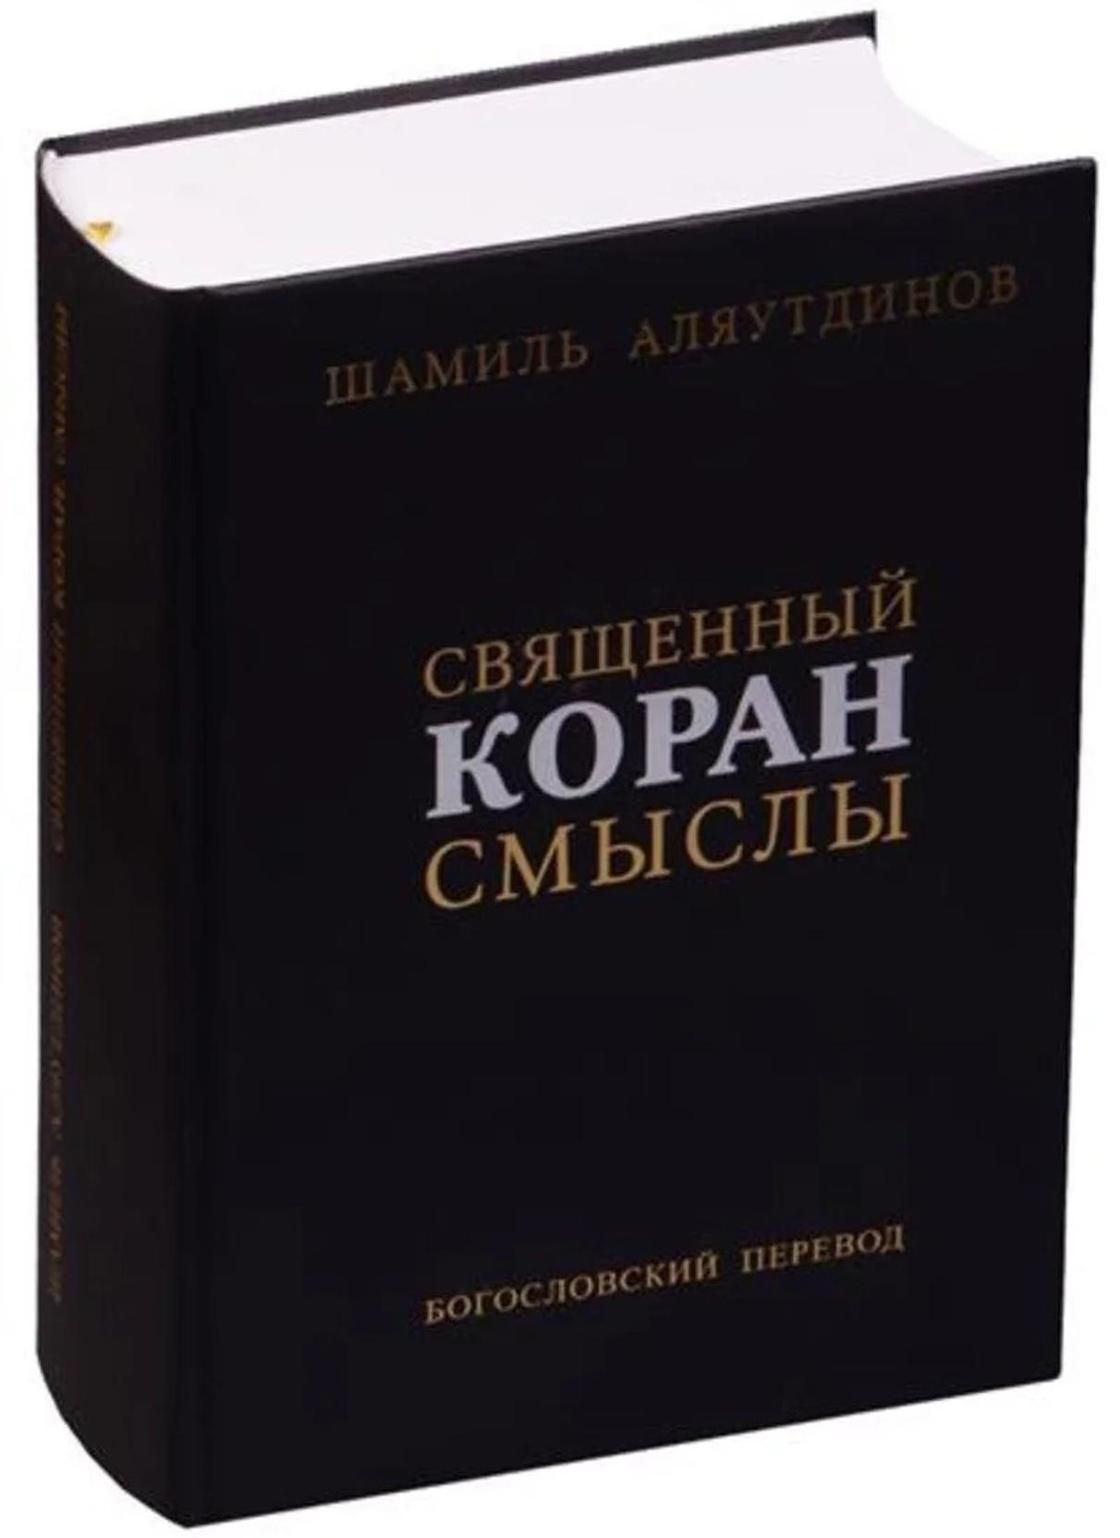 Шамиль Аляутдинов: биография и жена